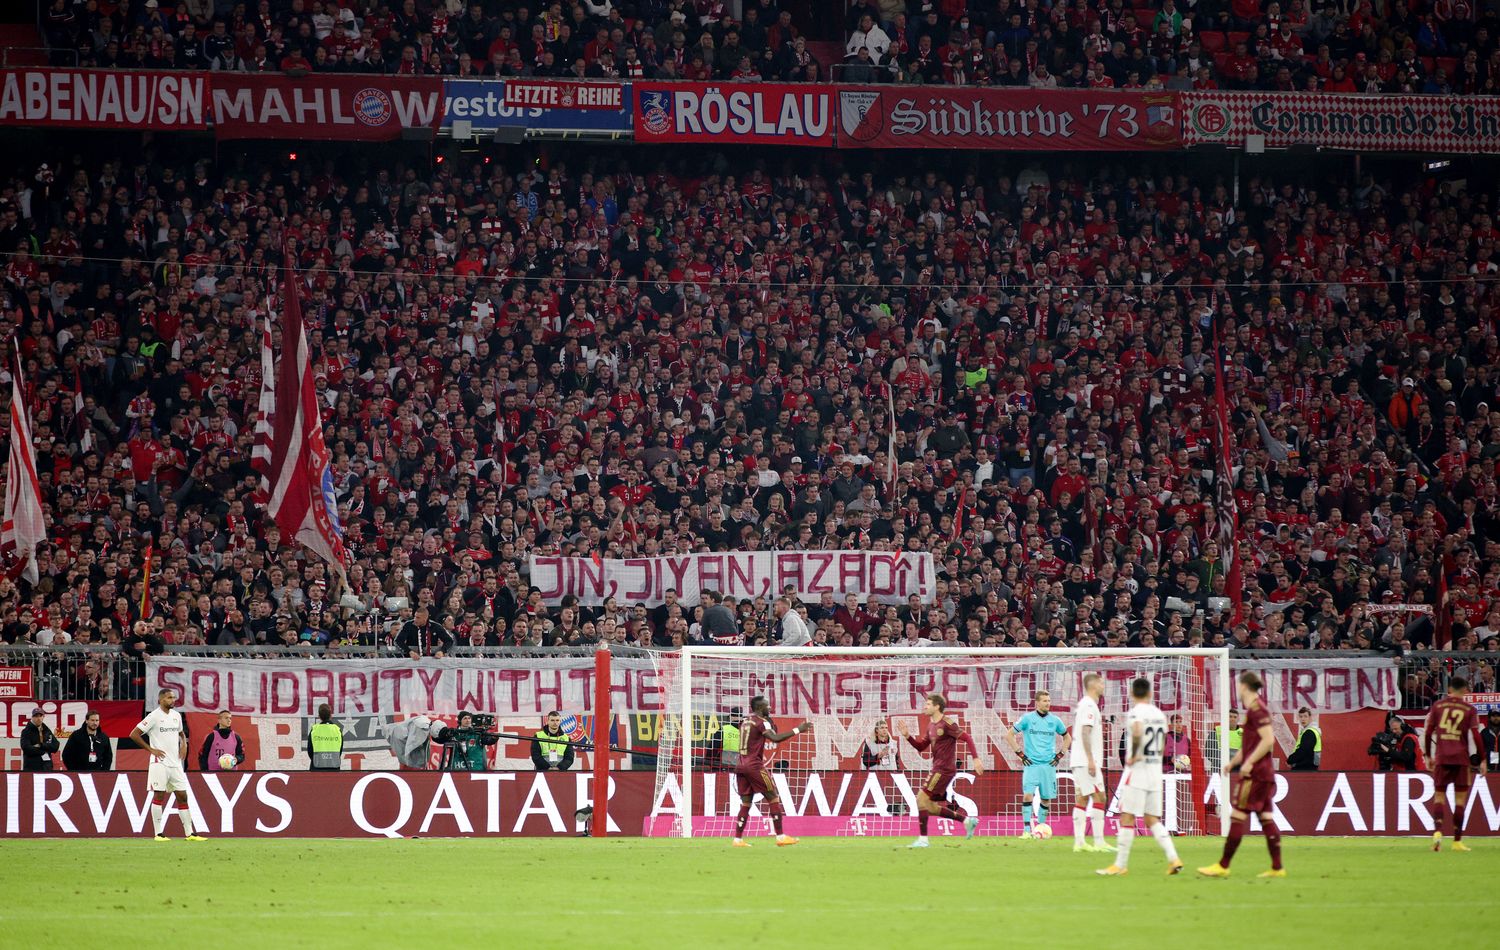 Starke Geste: Bayern-Fans unterst&uuml;tzen Protestbewegung im Iran